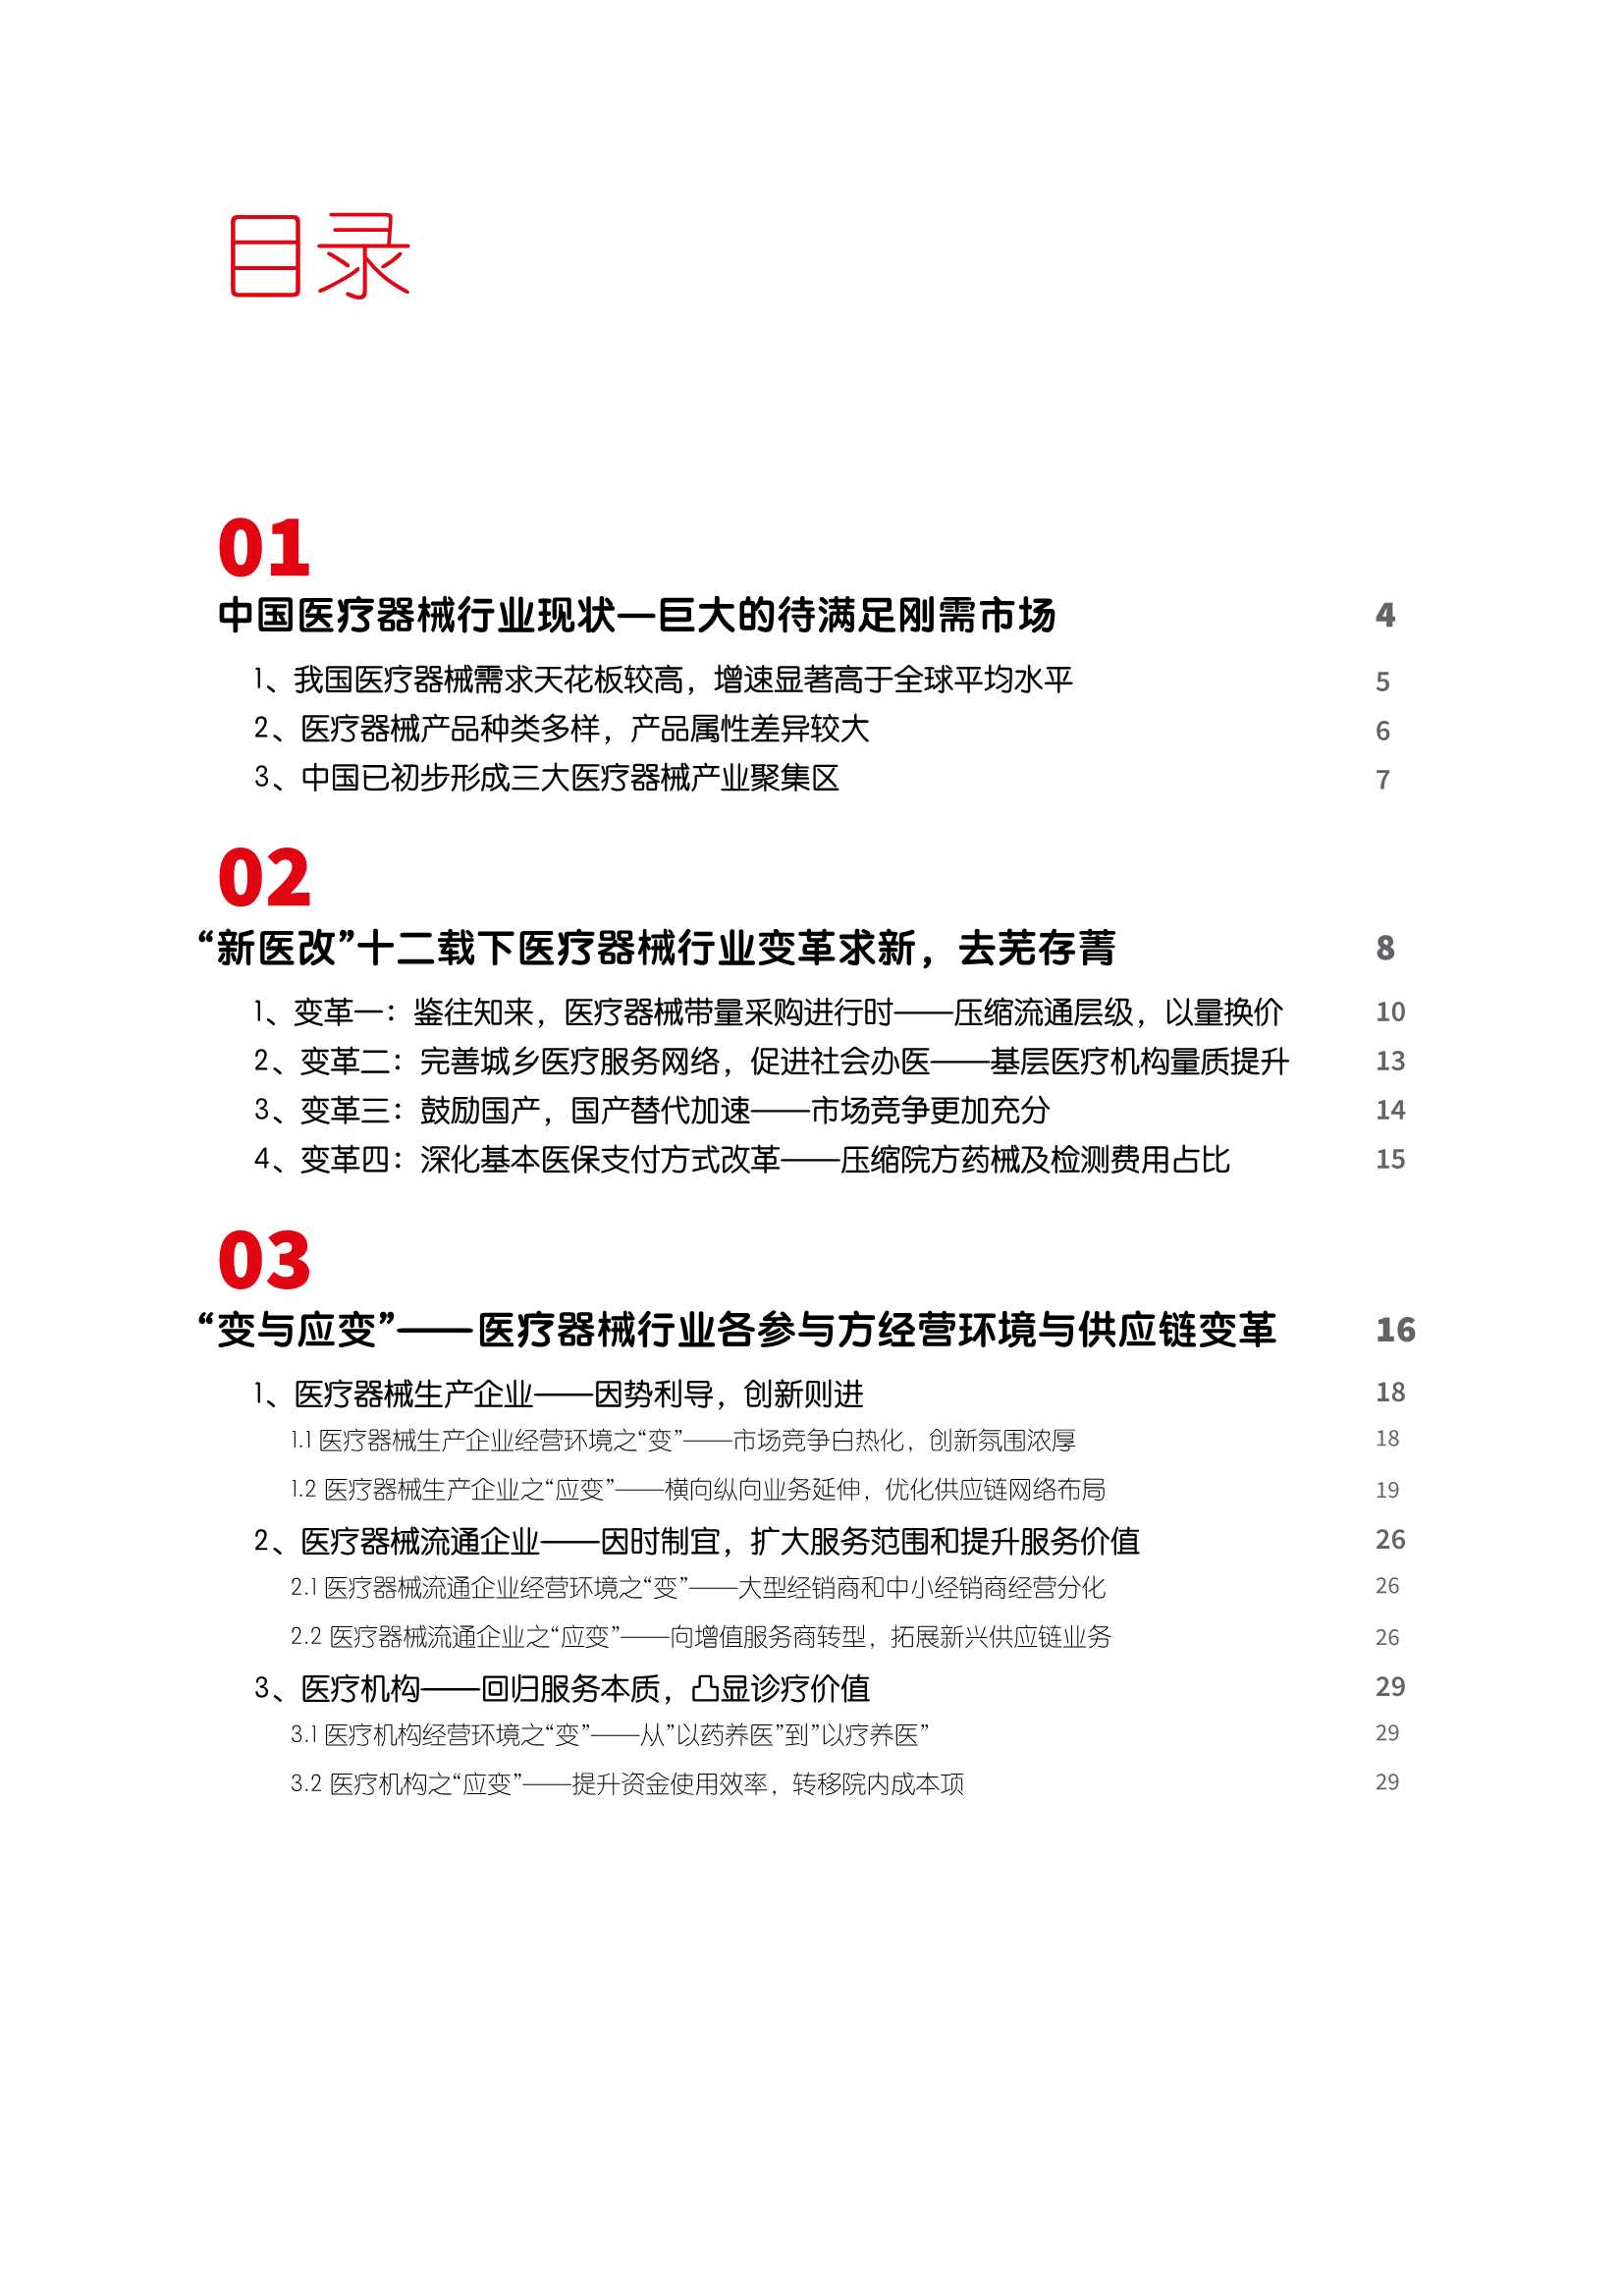 中国医疗器械供应链发展趋势报告-2022.04-32页